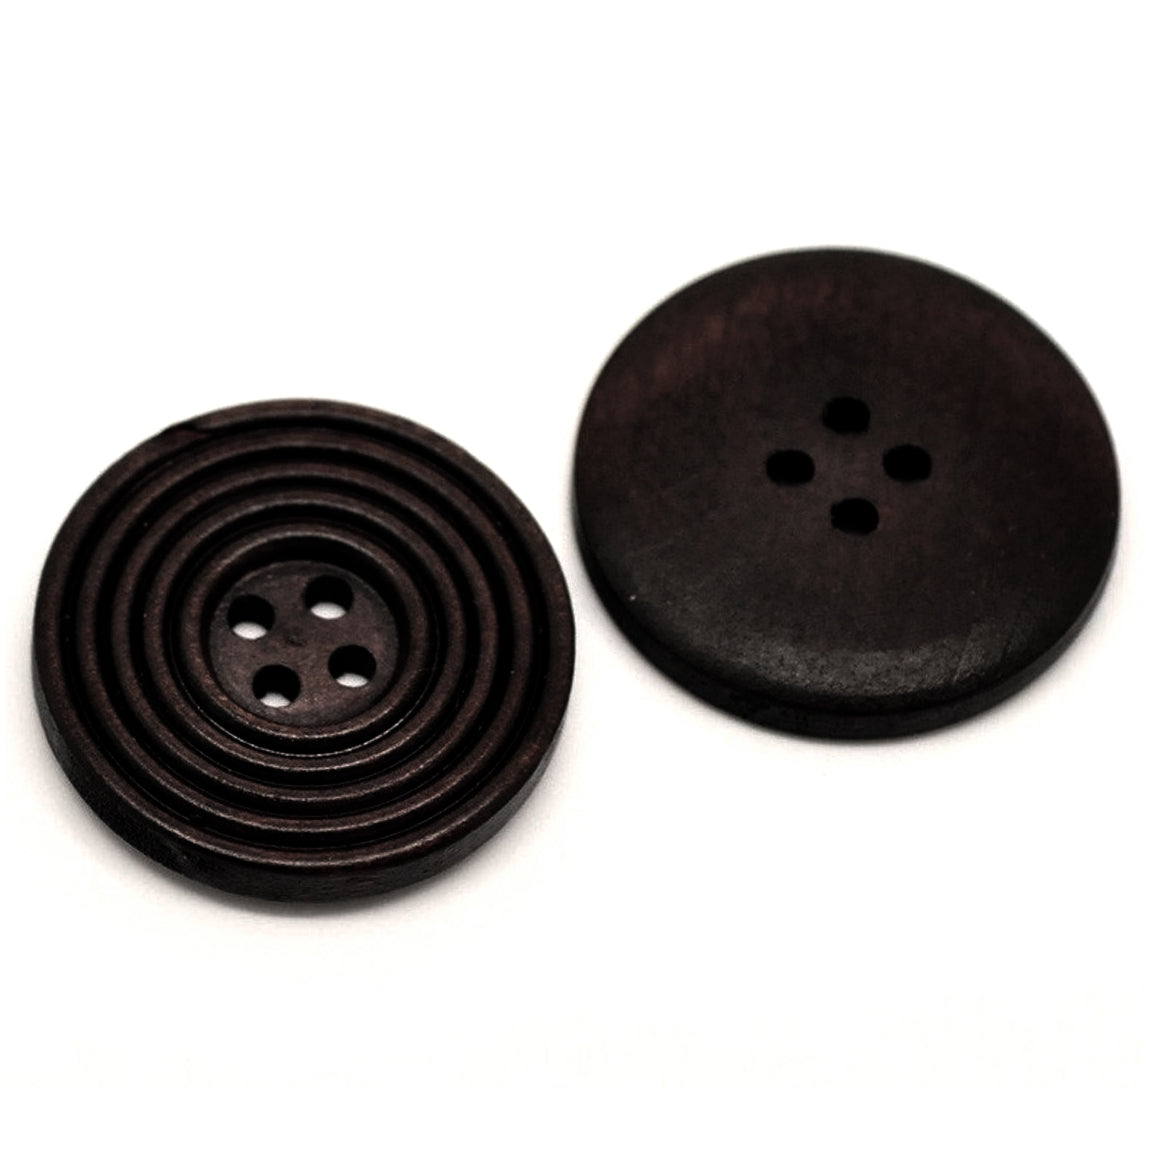 Bouton de bois café foncé de 3cm - ensemble de 6 boutons en bois naturel avec cercles